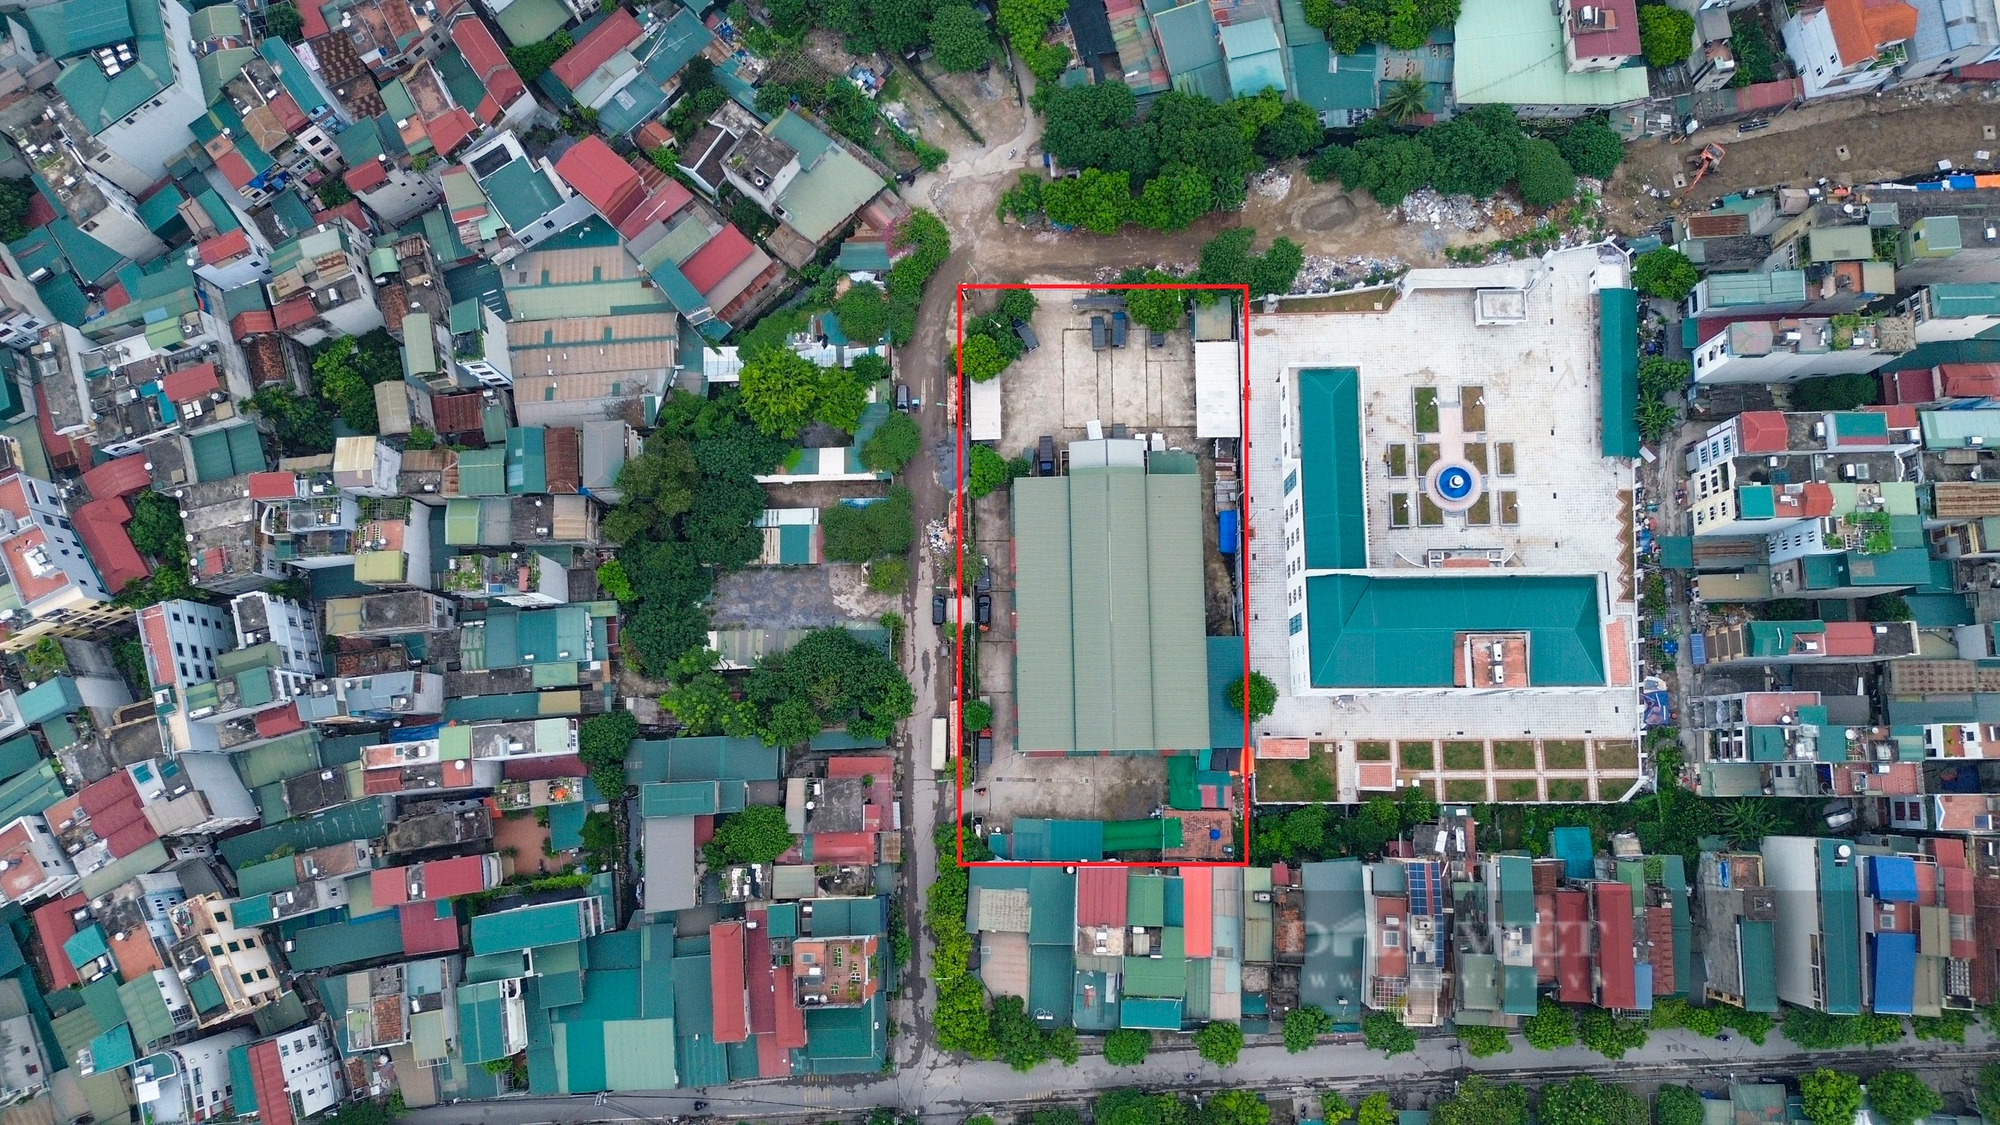 Chợ bỏ hoang ở Hà Nội: BQL viết thư ngỏ mời tiểu thương, kèm ưu đãi nhưng chợ vẫn "vắng như chùa Bà Đanh"- Ảnh 1.